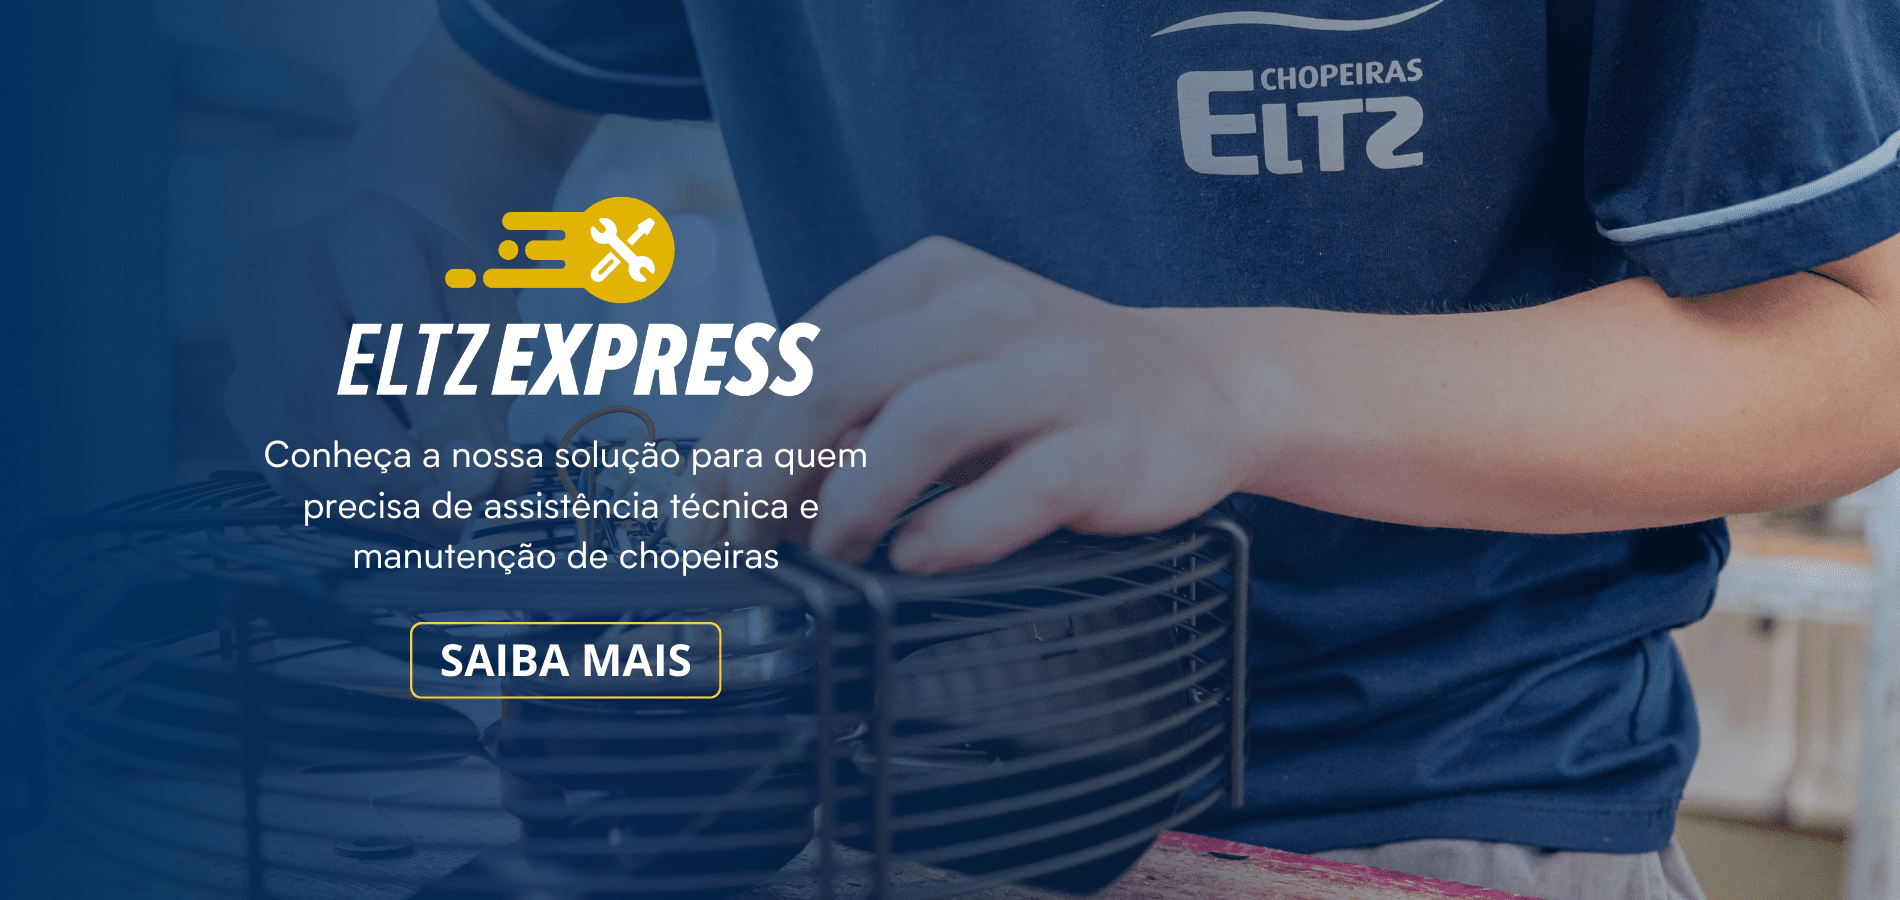 eltz-express-manutencao-de-chopeira